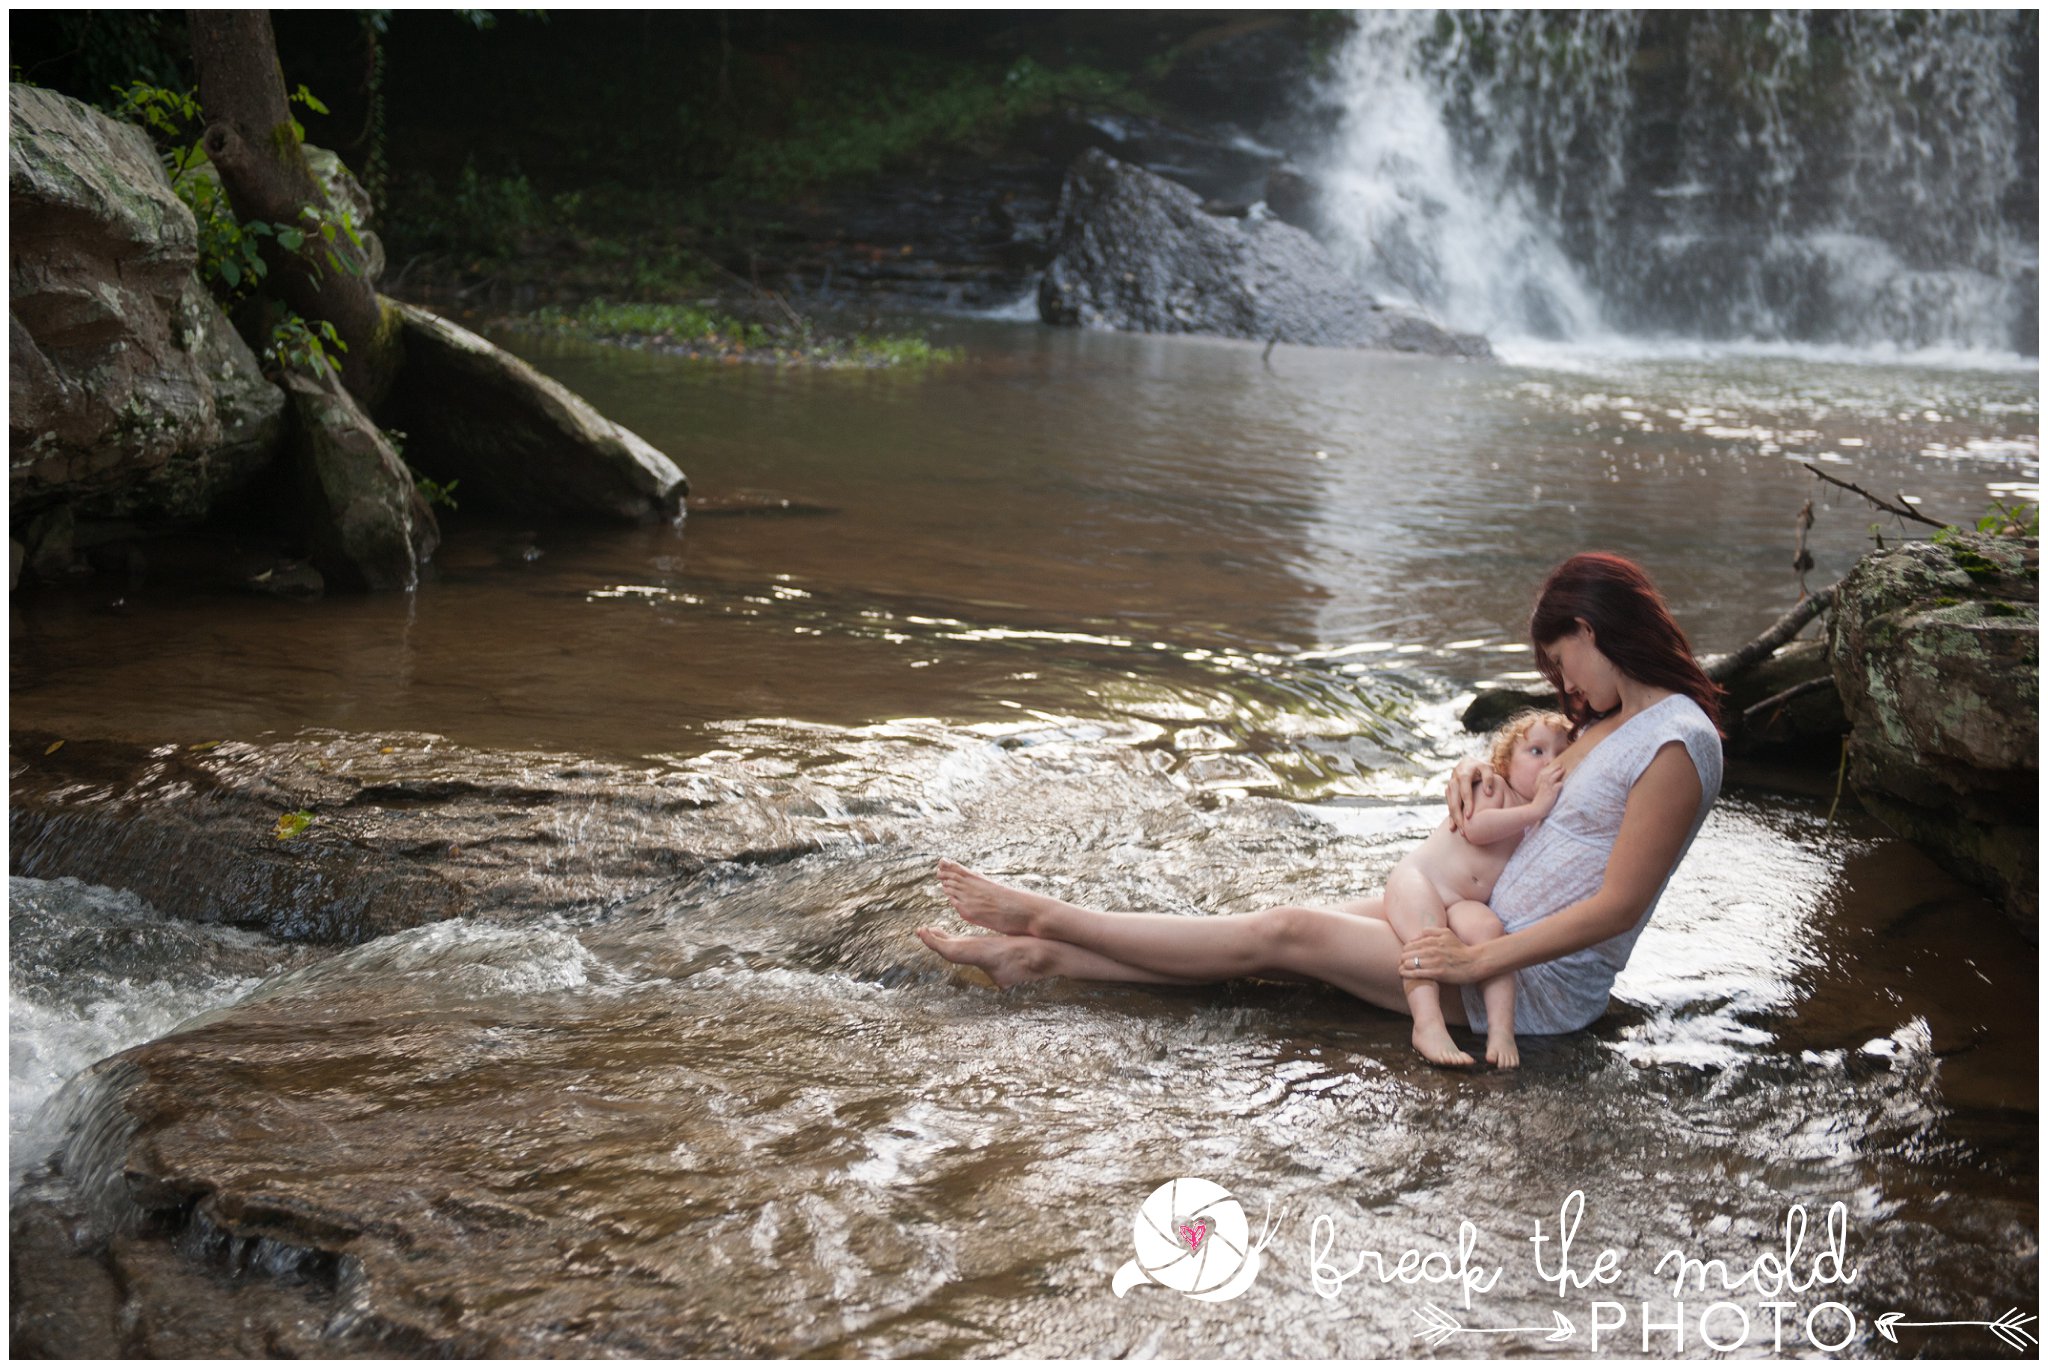 break-the-mold-photo-nursing-mothers-waterfall-women-celebrate-beauty_5433.jpg